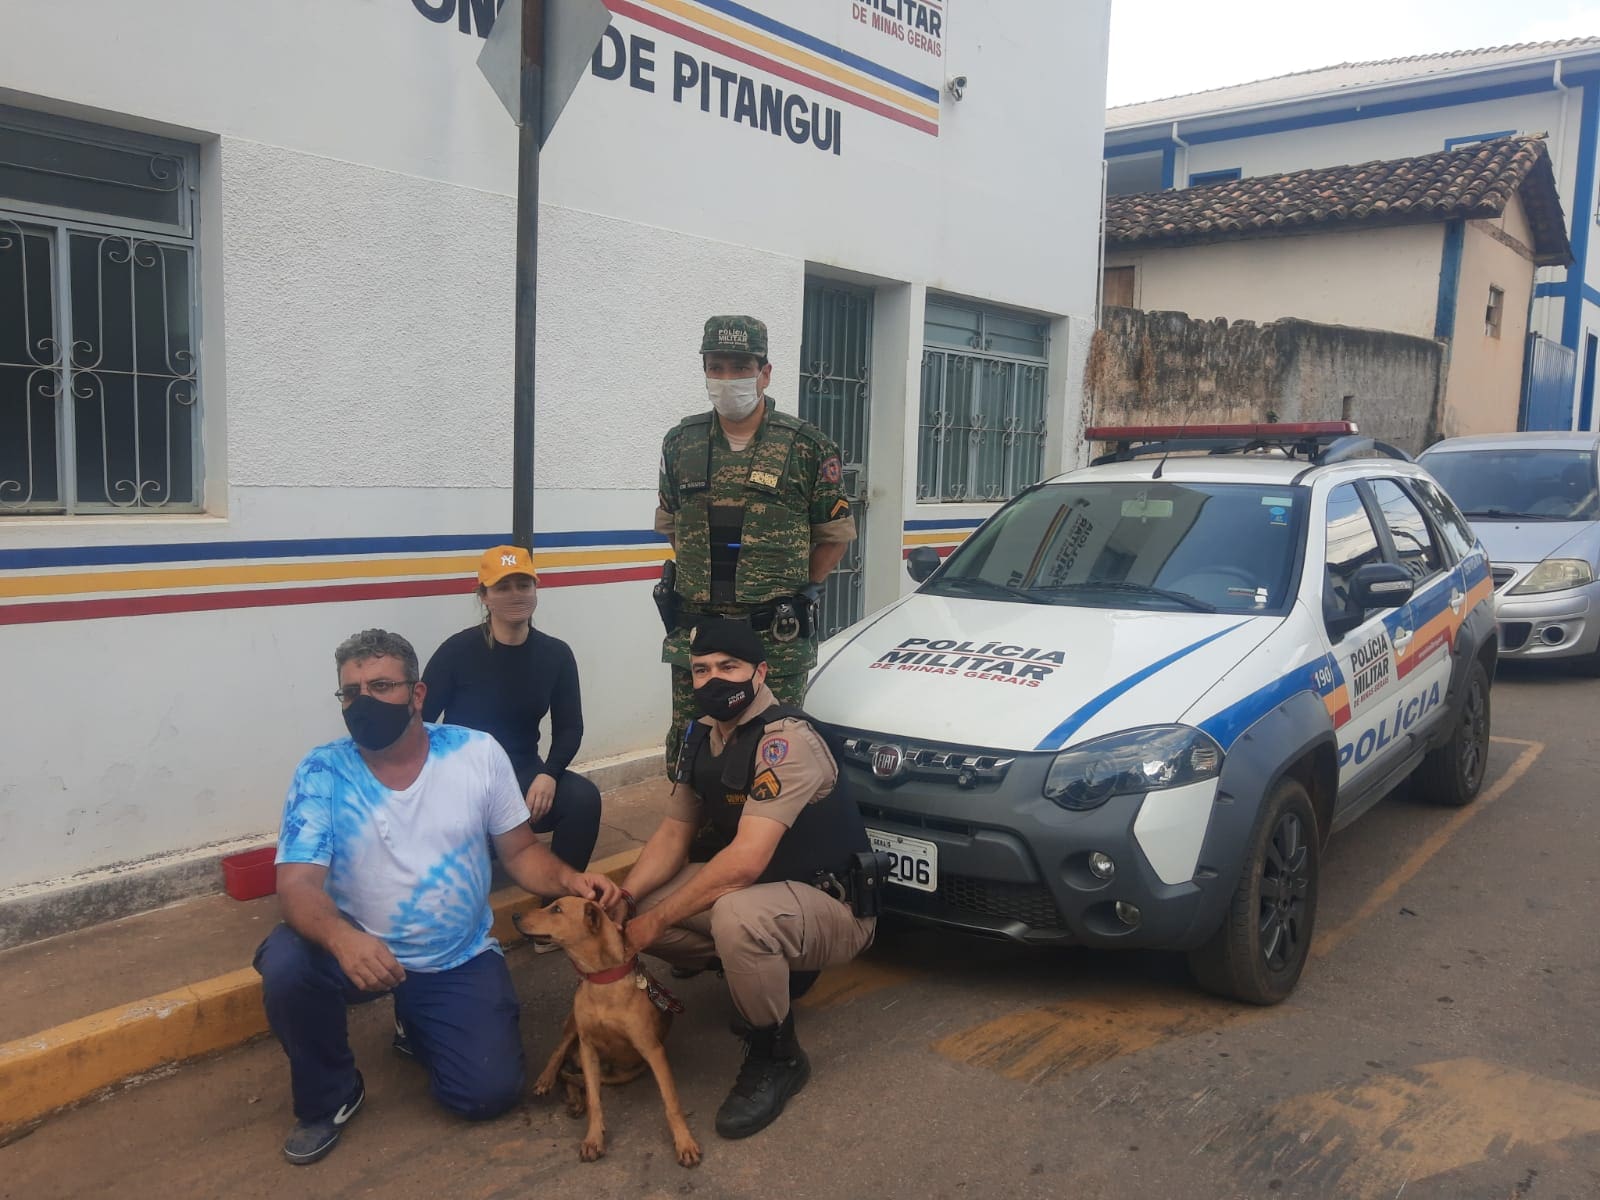 Cachorro vítima de maus tratos em Onça do Pitangui é localizado e está bem